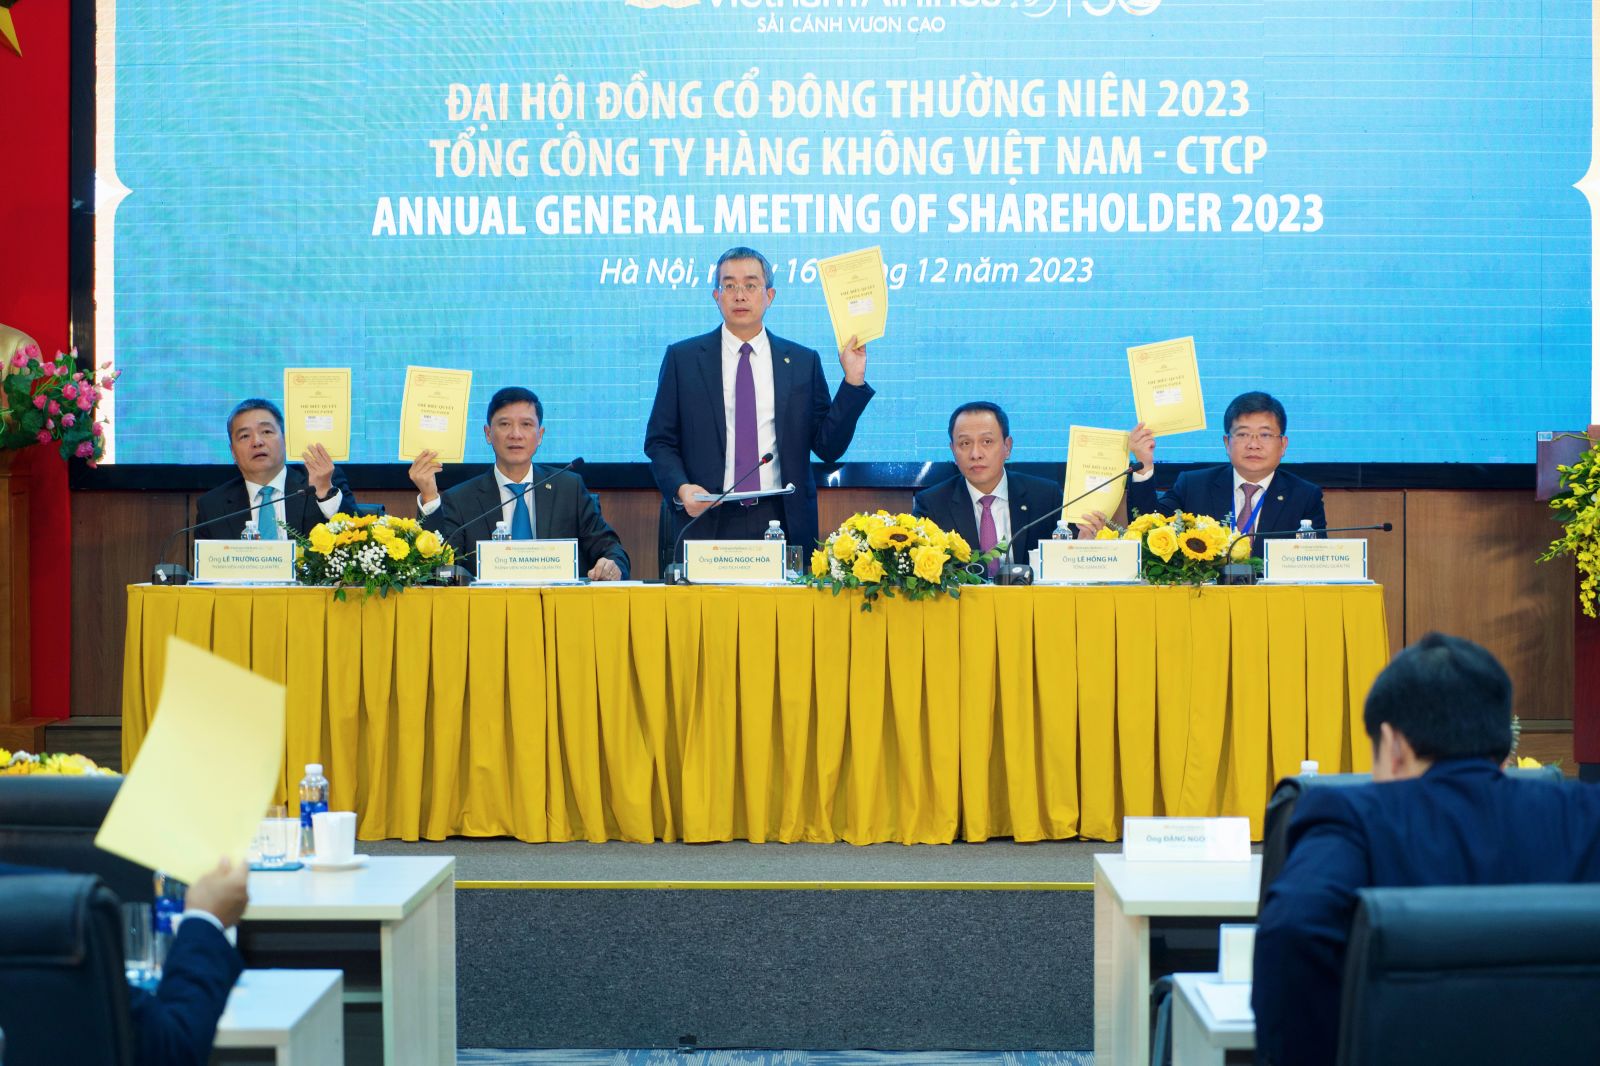 Tổng công ty Hàng không Việt Nam (Vietnam Airlines) đã tổ chức thành công kỳ họp Đại hội đồng cổ đông thường niên năm 2023